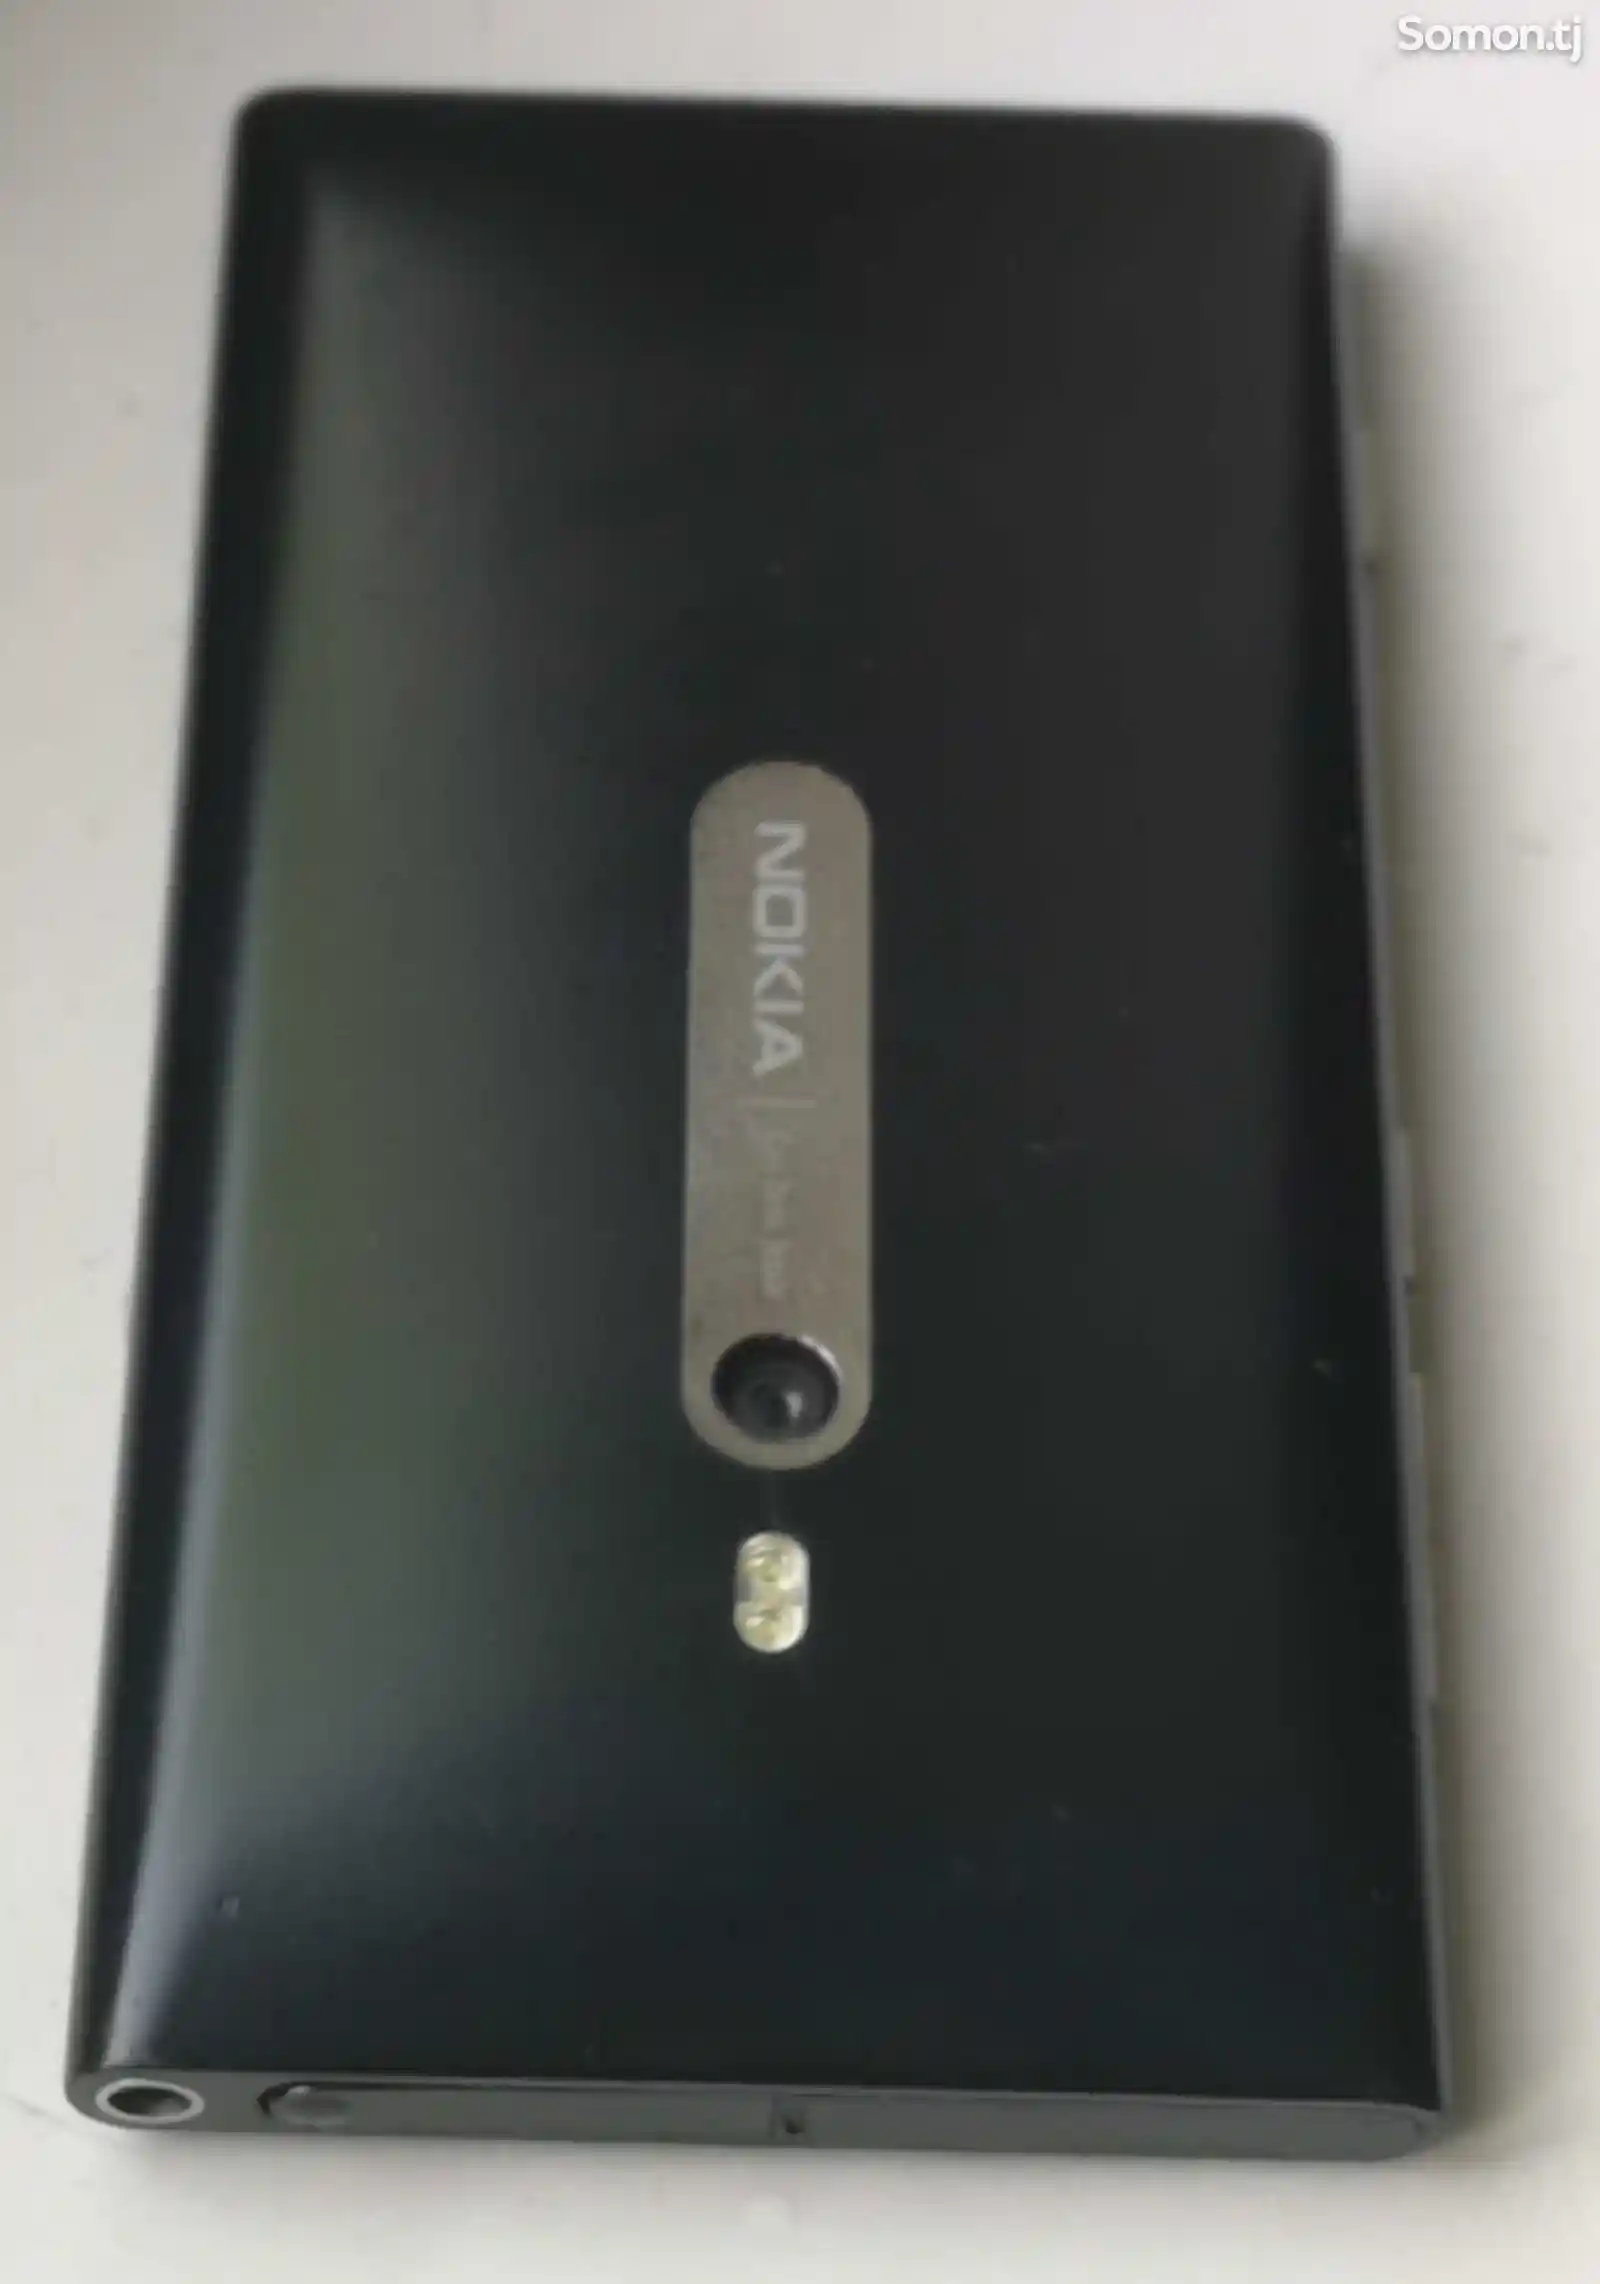 Nokia Lumia 800-3